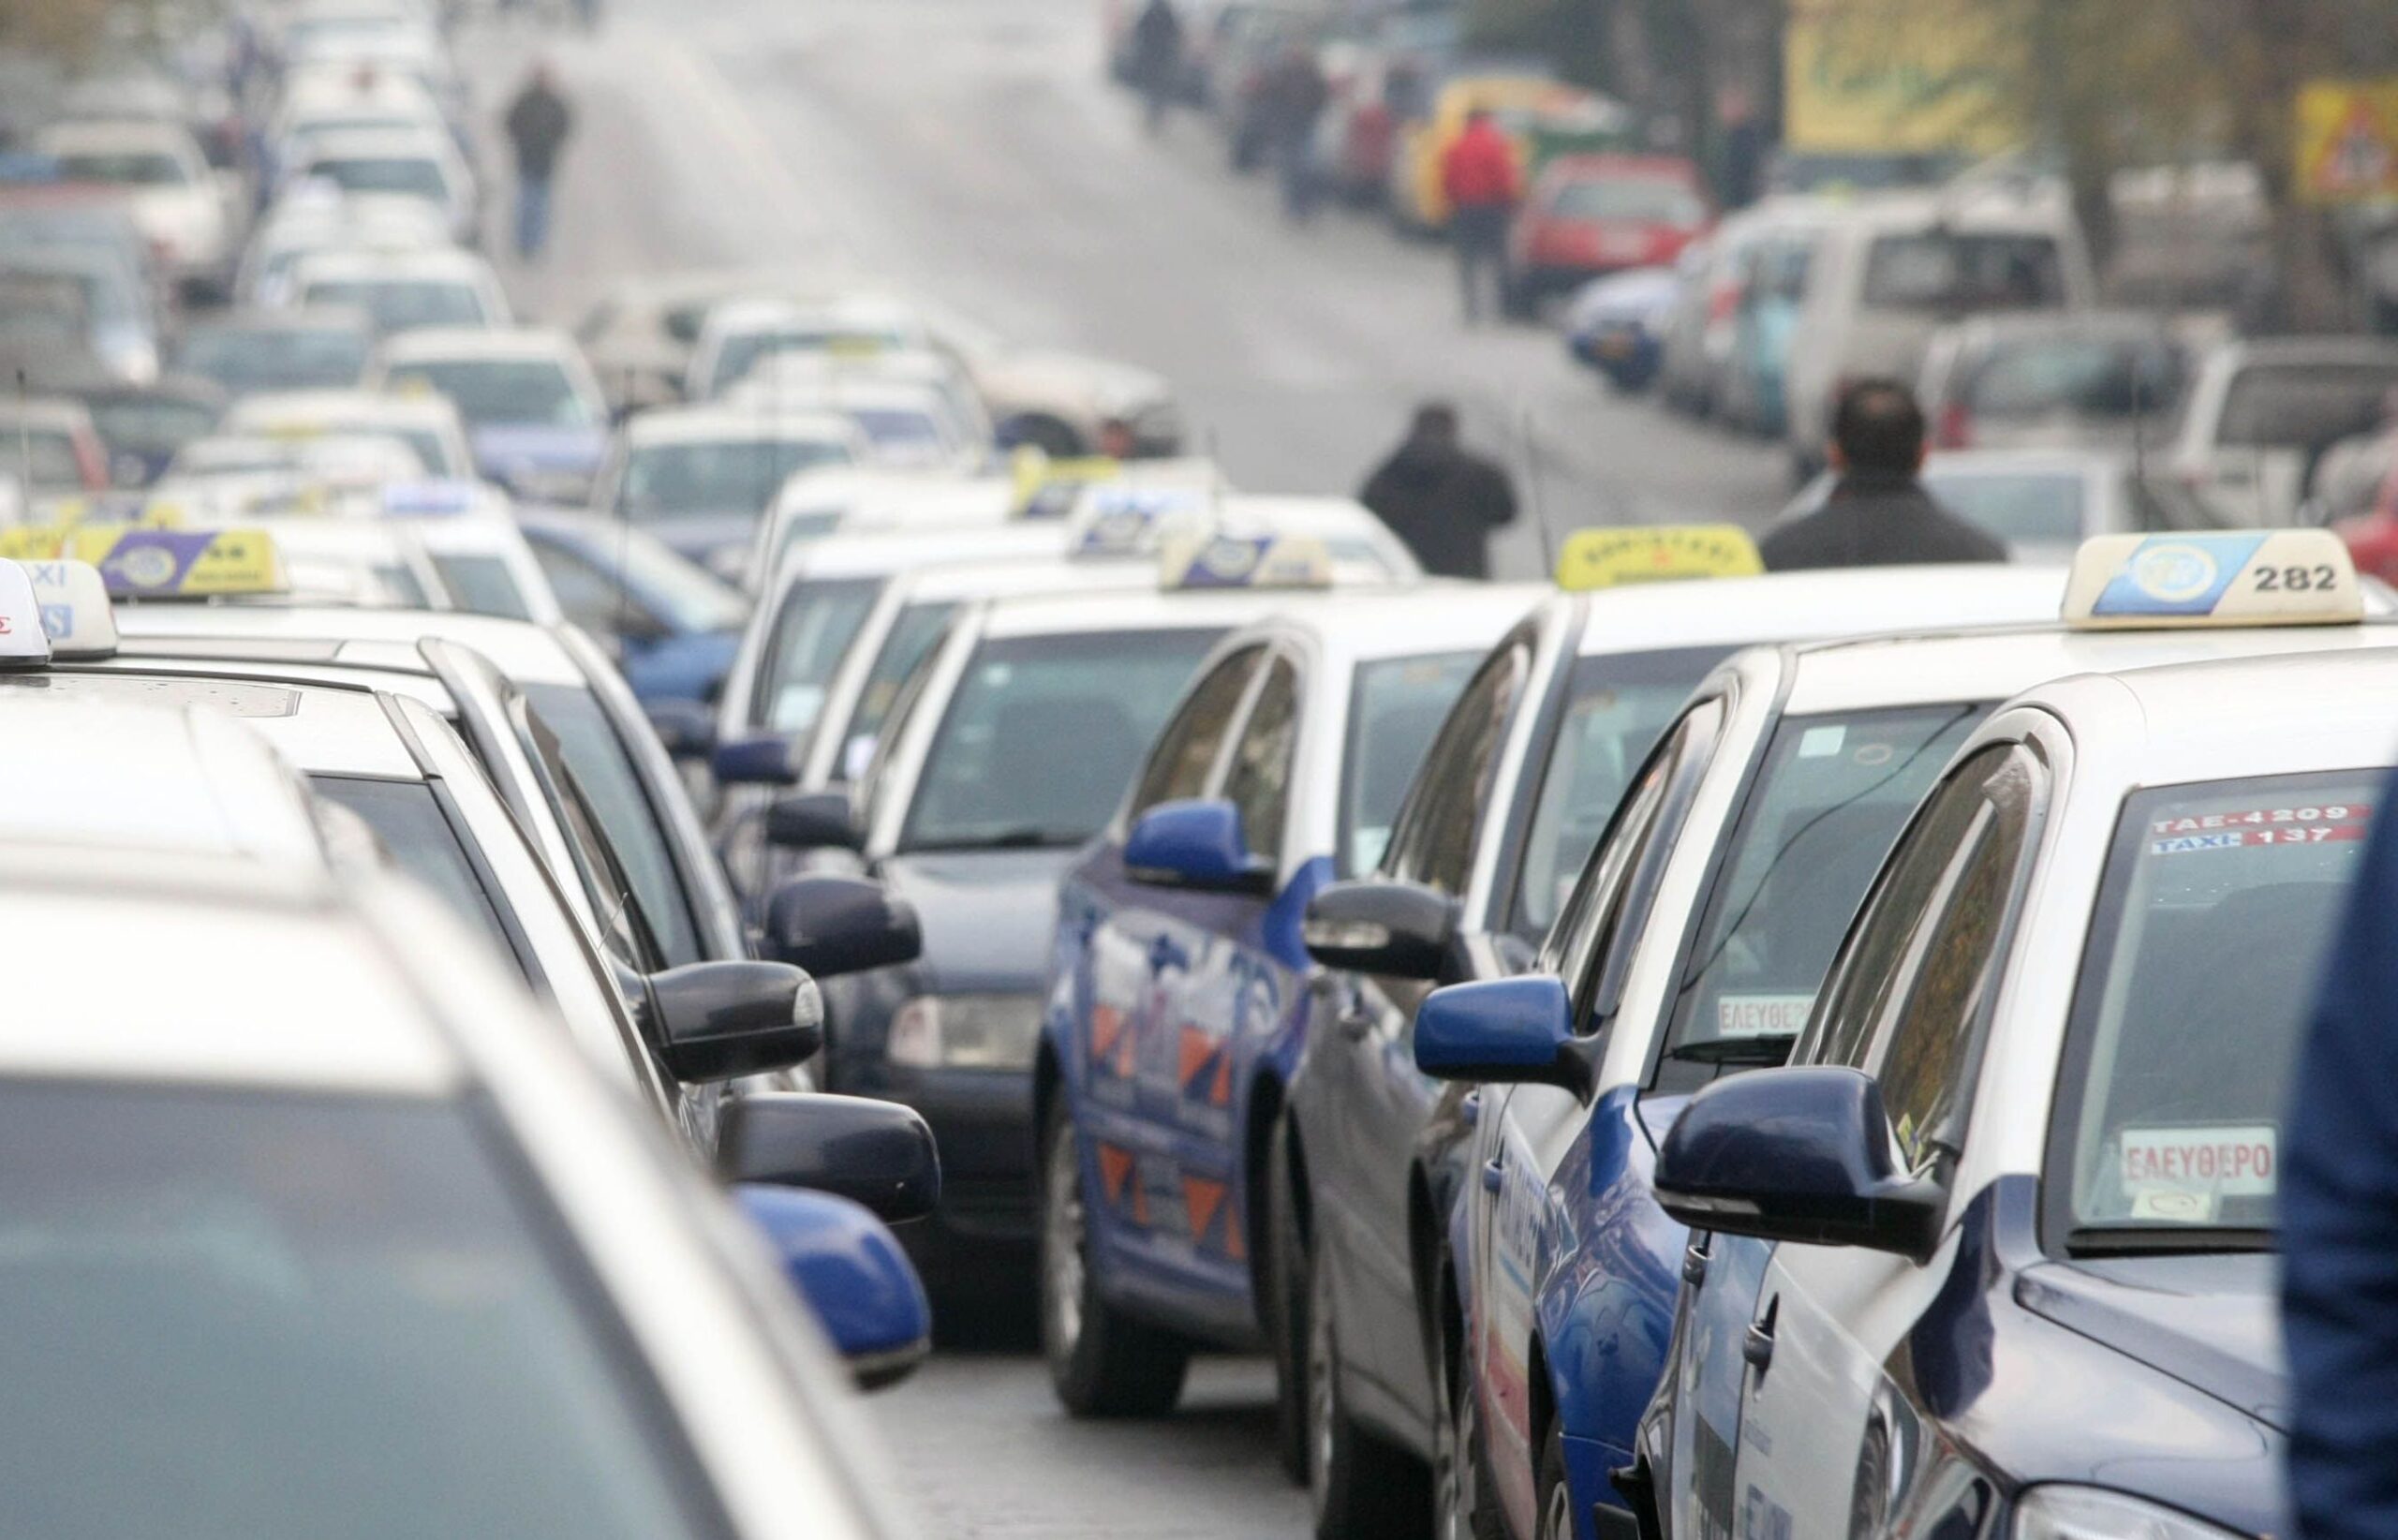 Θεσσαλονίκη: Υποκλοπή μεταφορικού έργου από ηλεκτρονική πλατφόρμα με έδρα την Κύπρο καταγγέλλουν επαγγελματίες οδηγοί ταξί